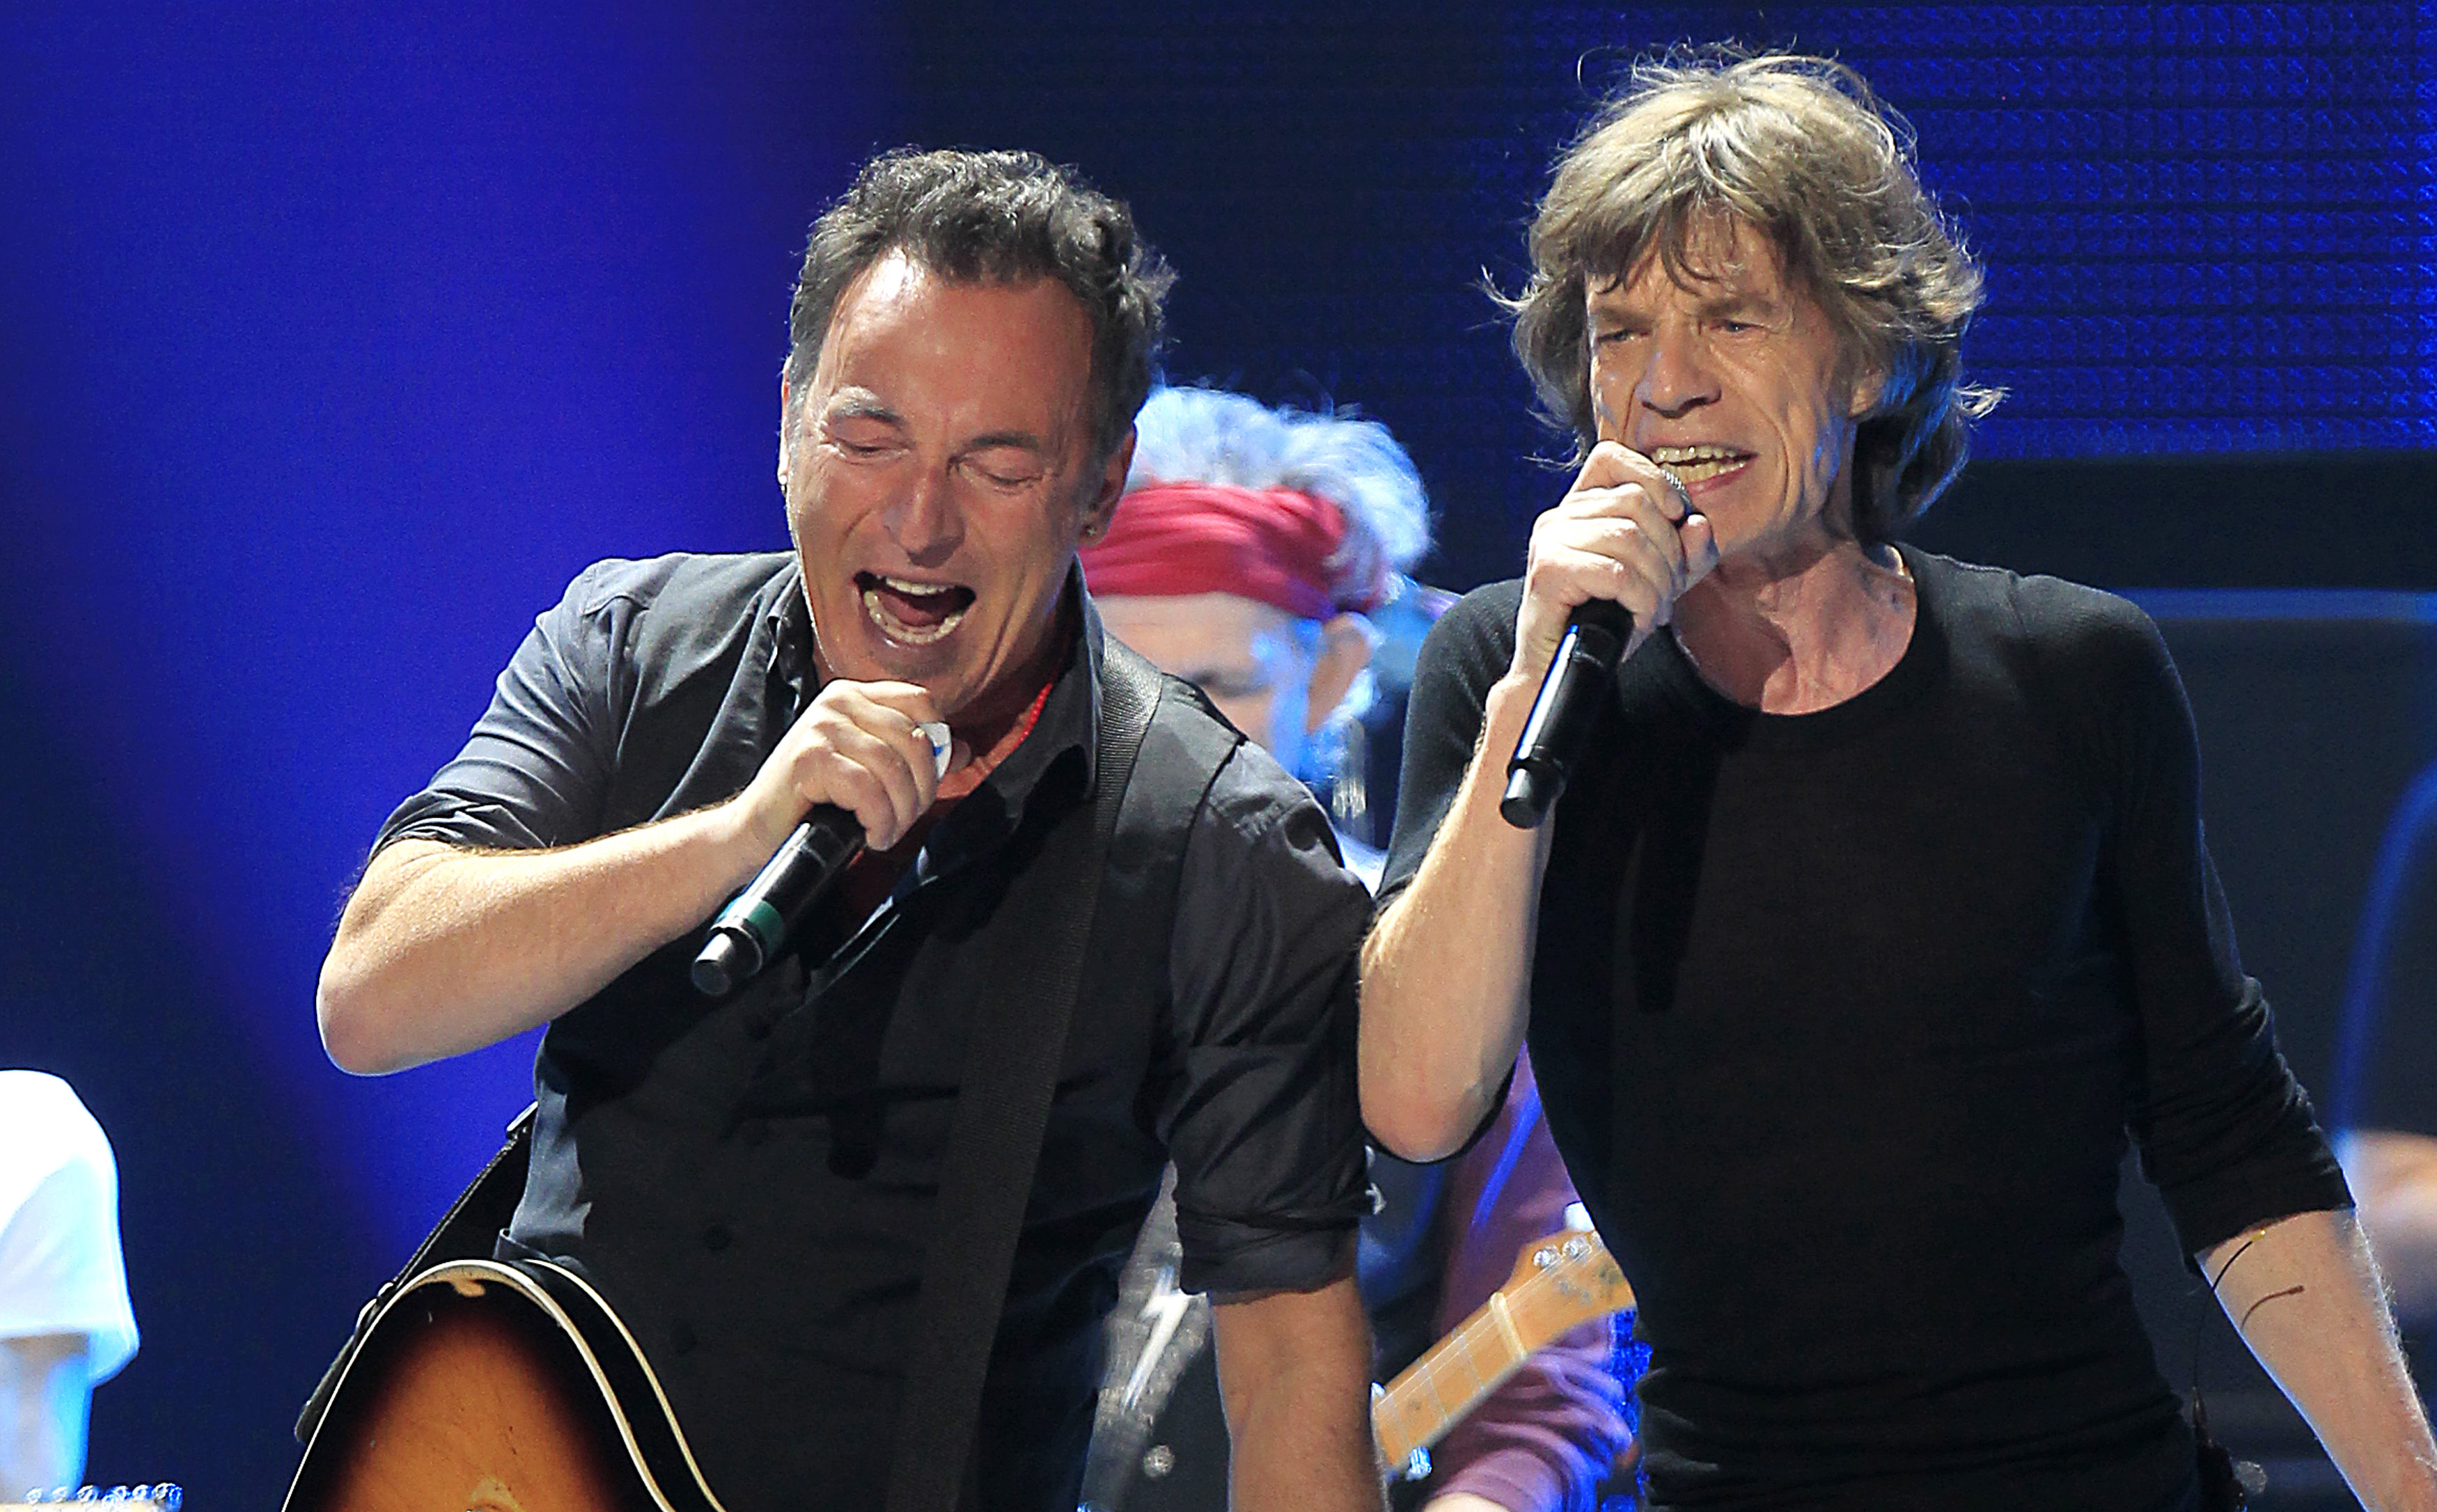 Mick Jagger & Bruce Springsteen